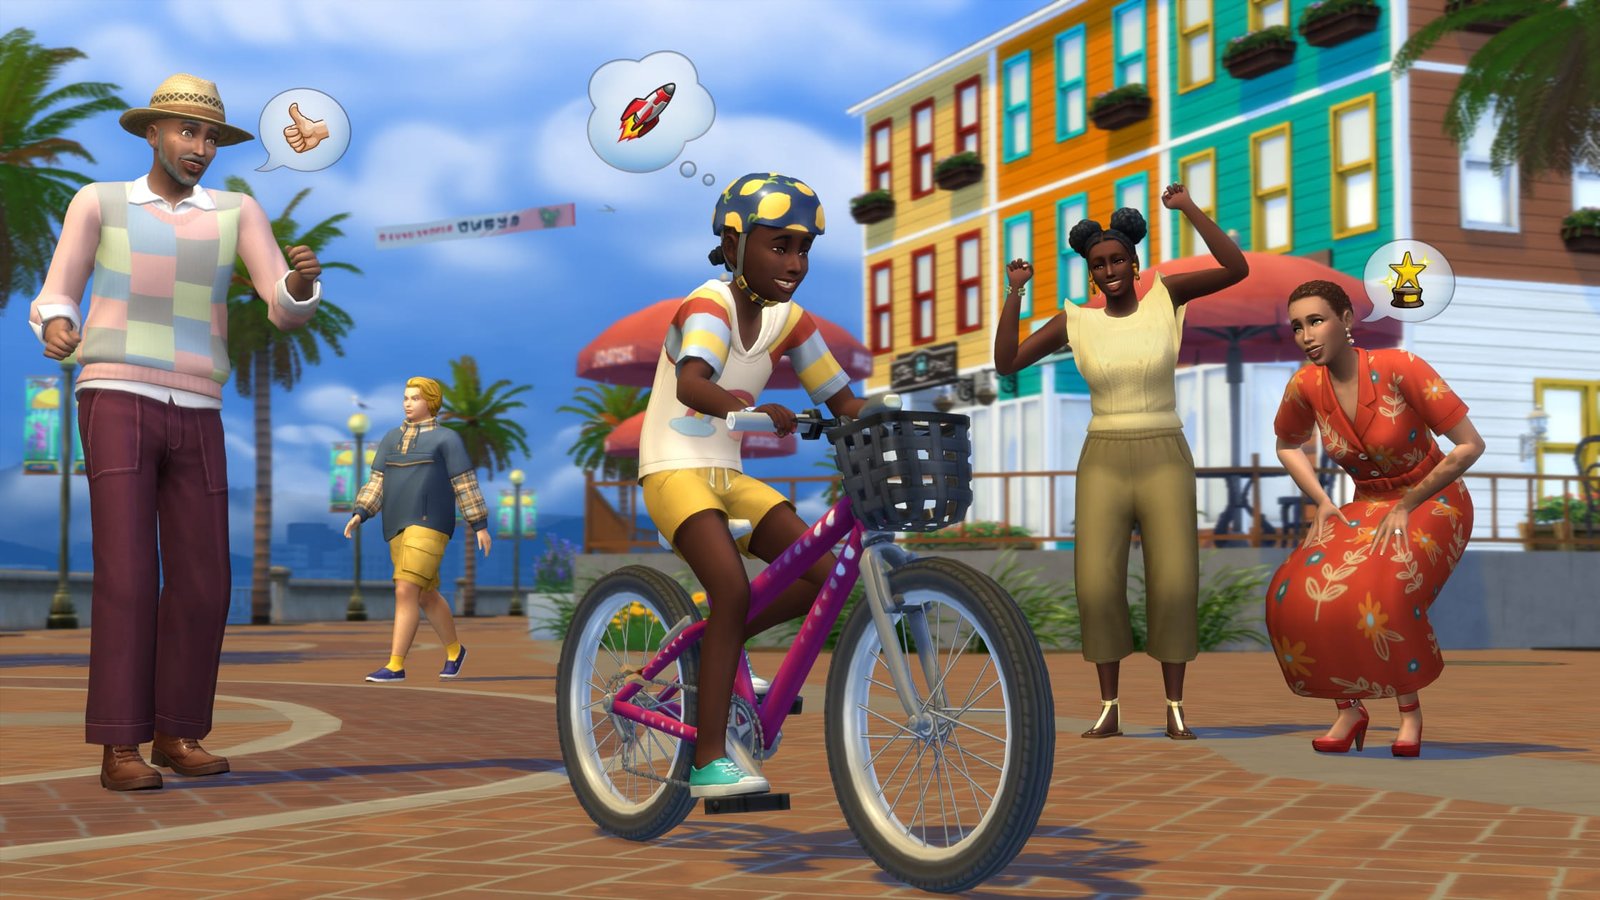 The Sims 4 Rumo à Fama, nova expansão chega em 16 de Novembro! // Mundo Drix